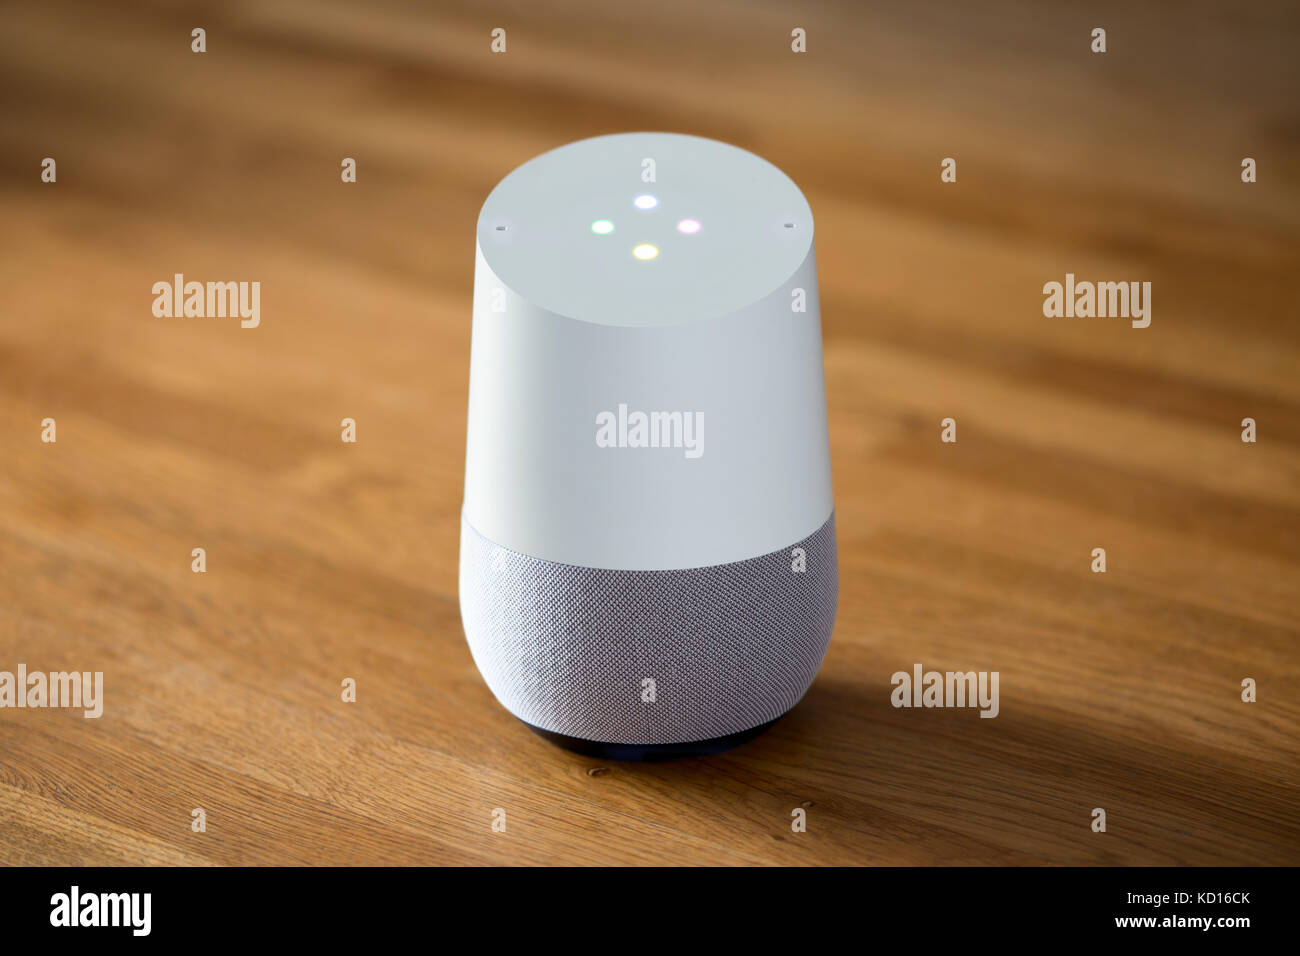 Il rilascio 2016 Home page di Google smart speaker e intelligente assistente personale dispositivo sparato contro un sfondo di legno (solo uso editoriale). Foto Stock